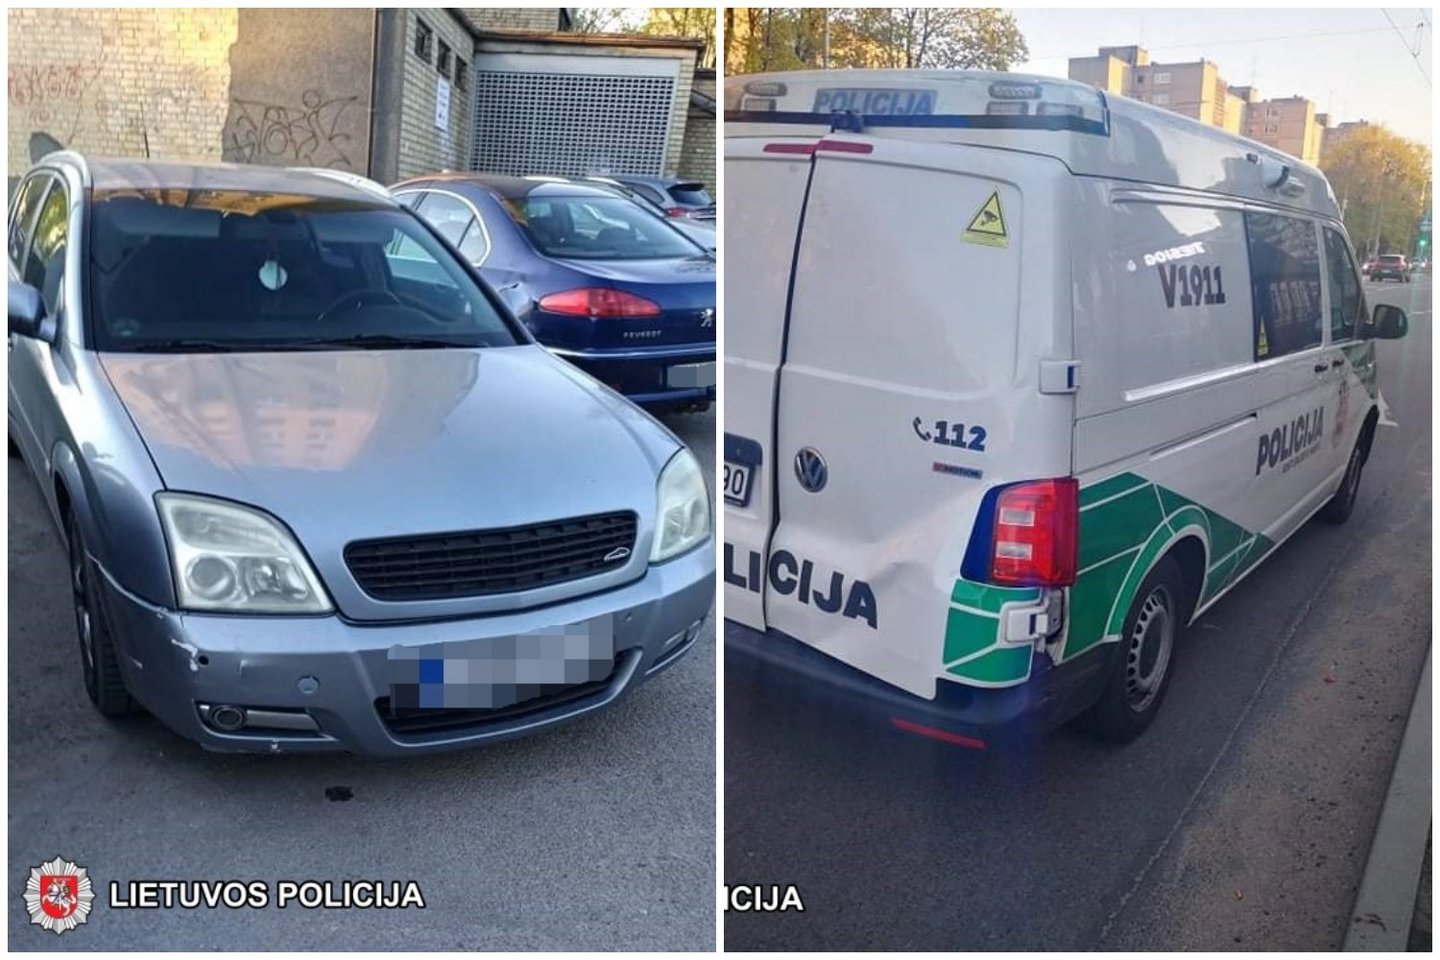  Vilniuje vyko gaudynės tarsi Holivudo trileryje: apdaužytas ir policijos automobilis.<br> Vilniaus apskrities VPK nuotr.